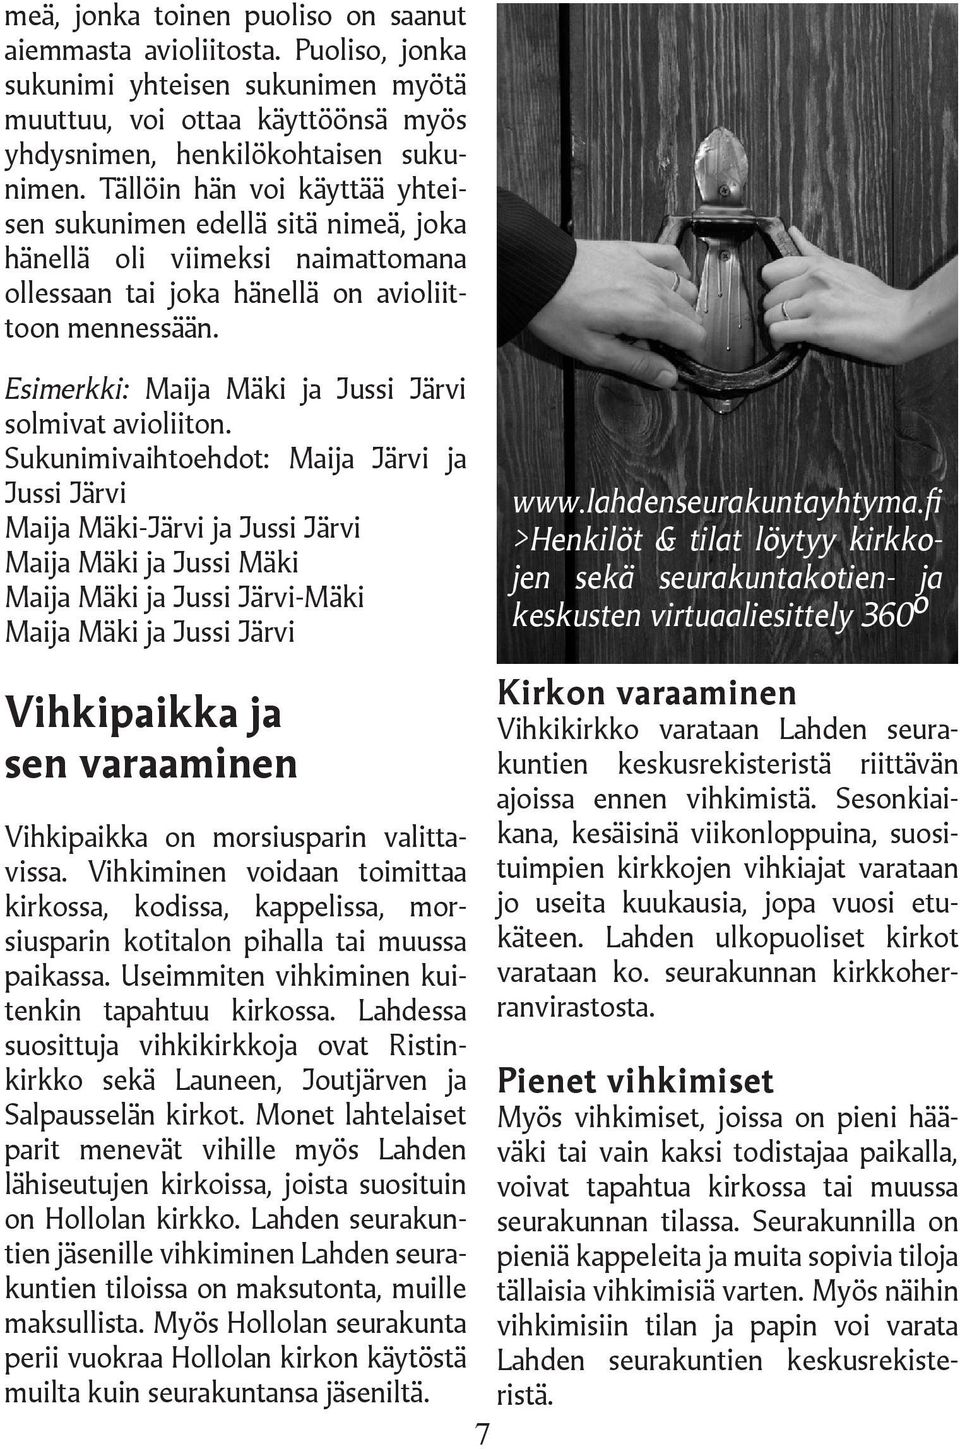 Esimerkki: Maija Mäki ja Jussi Järvi solmivat avioliiton.